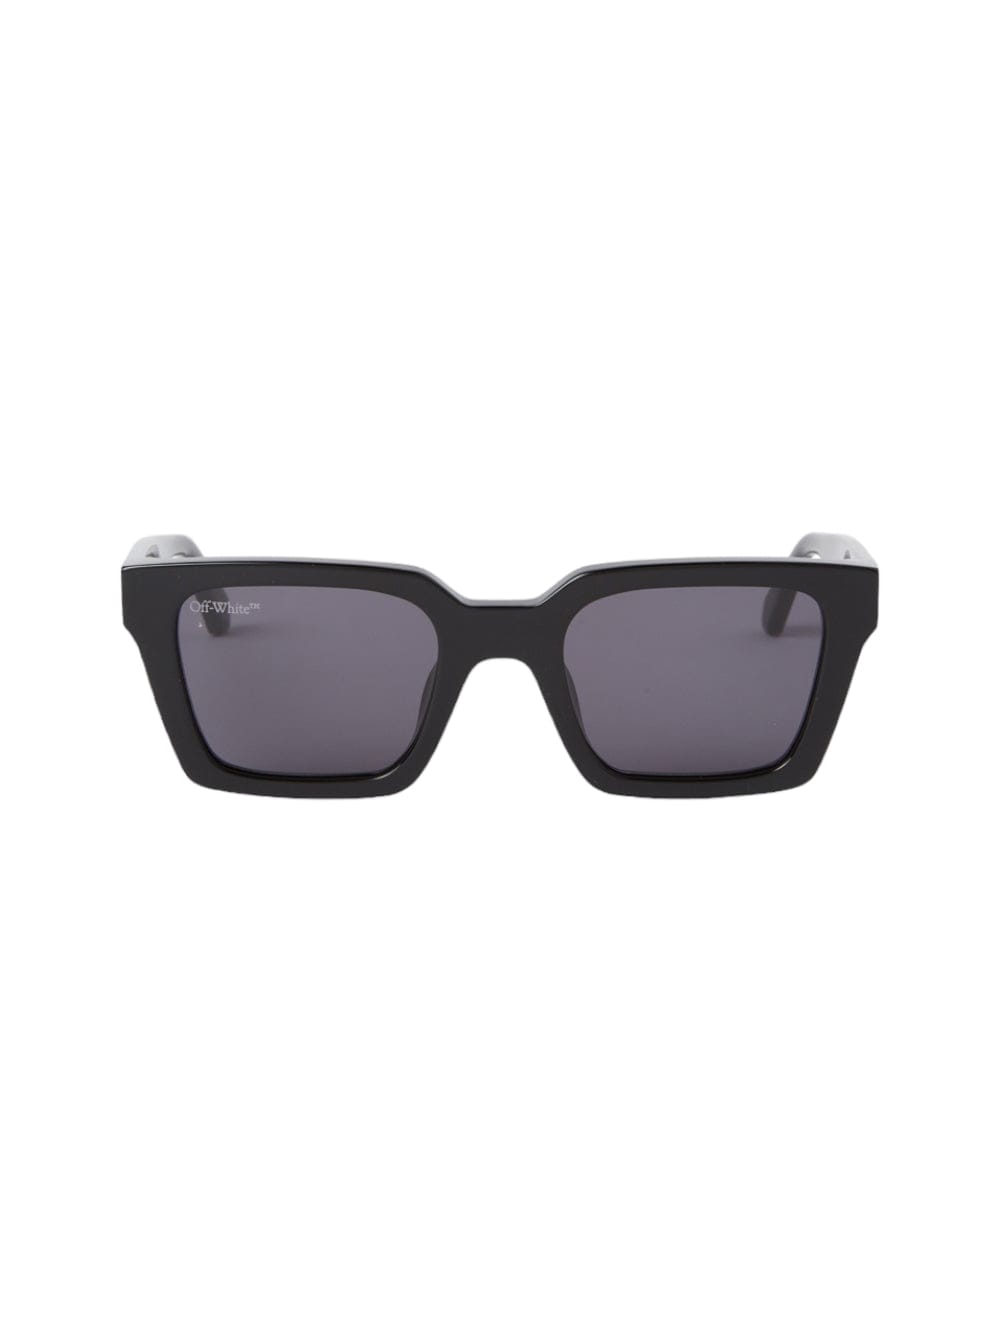 Palermo - Black Sunglasses